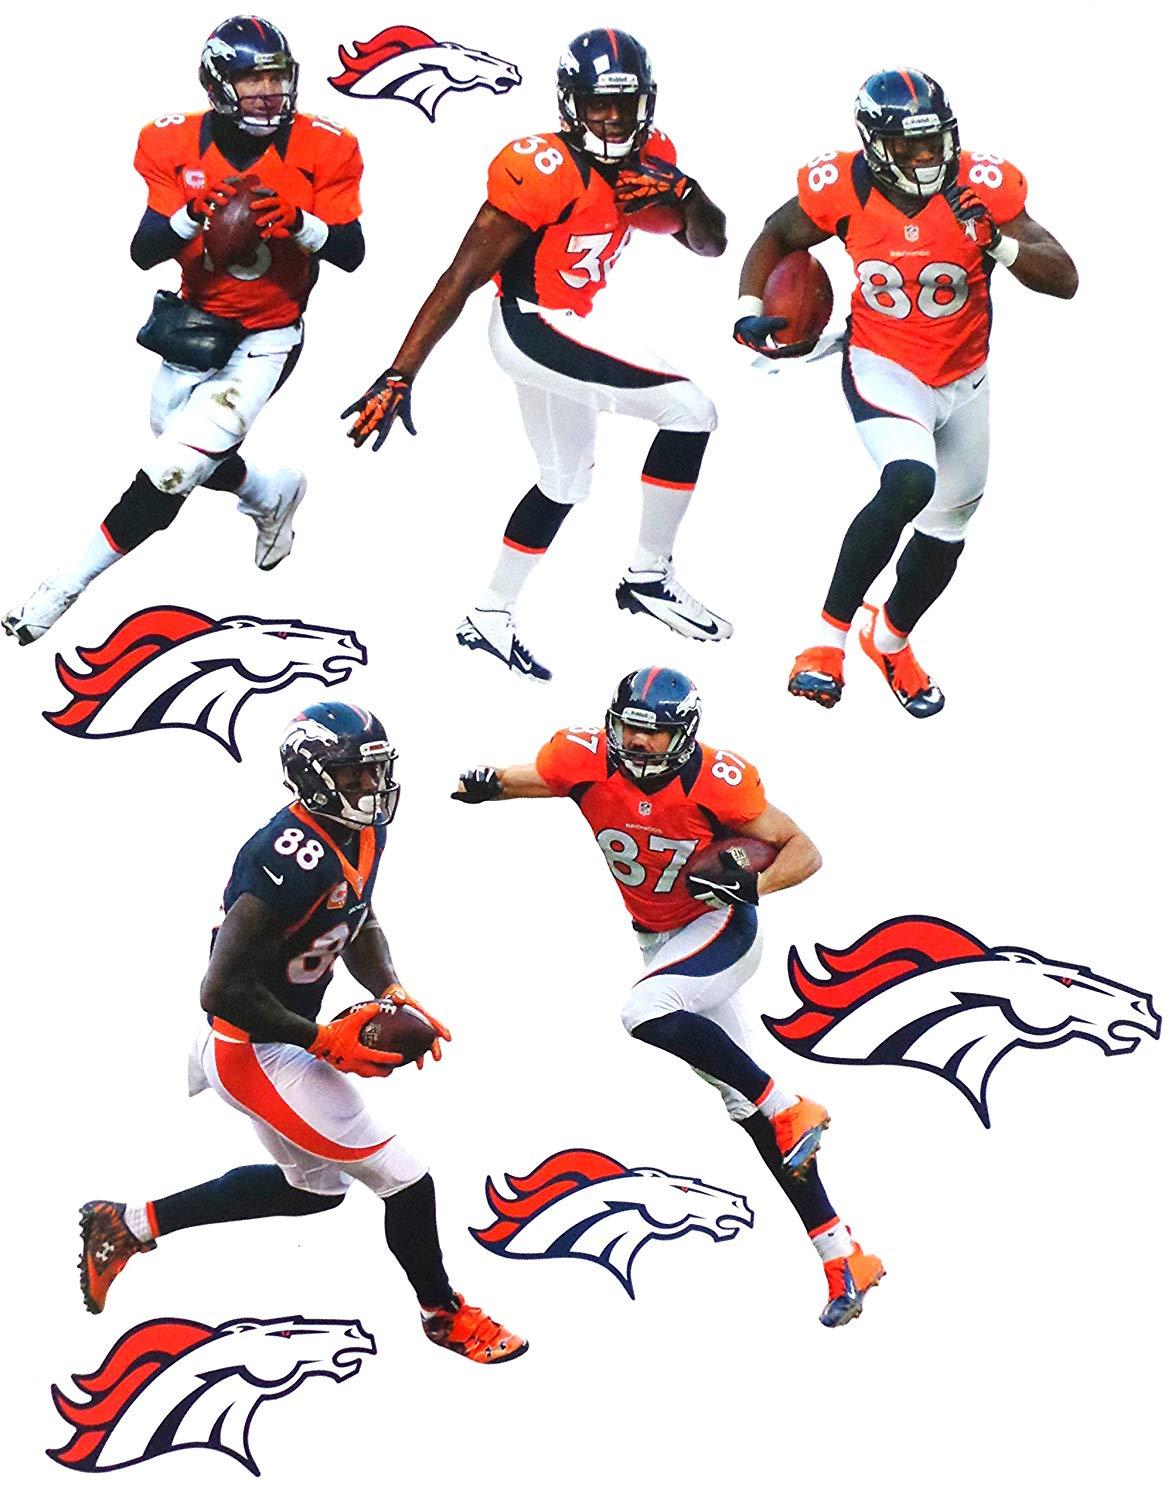 NFL Broncos Logo - FATHEAD Denver Broncos Team Set 5 Players + 5 Broncos